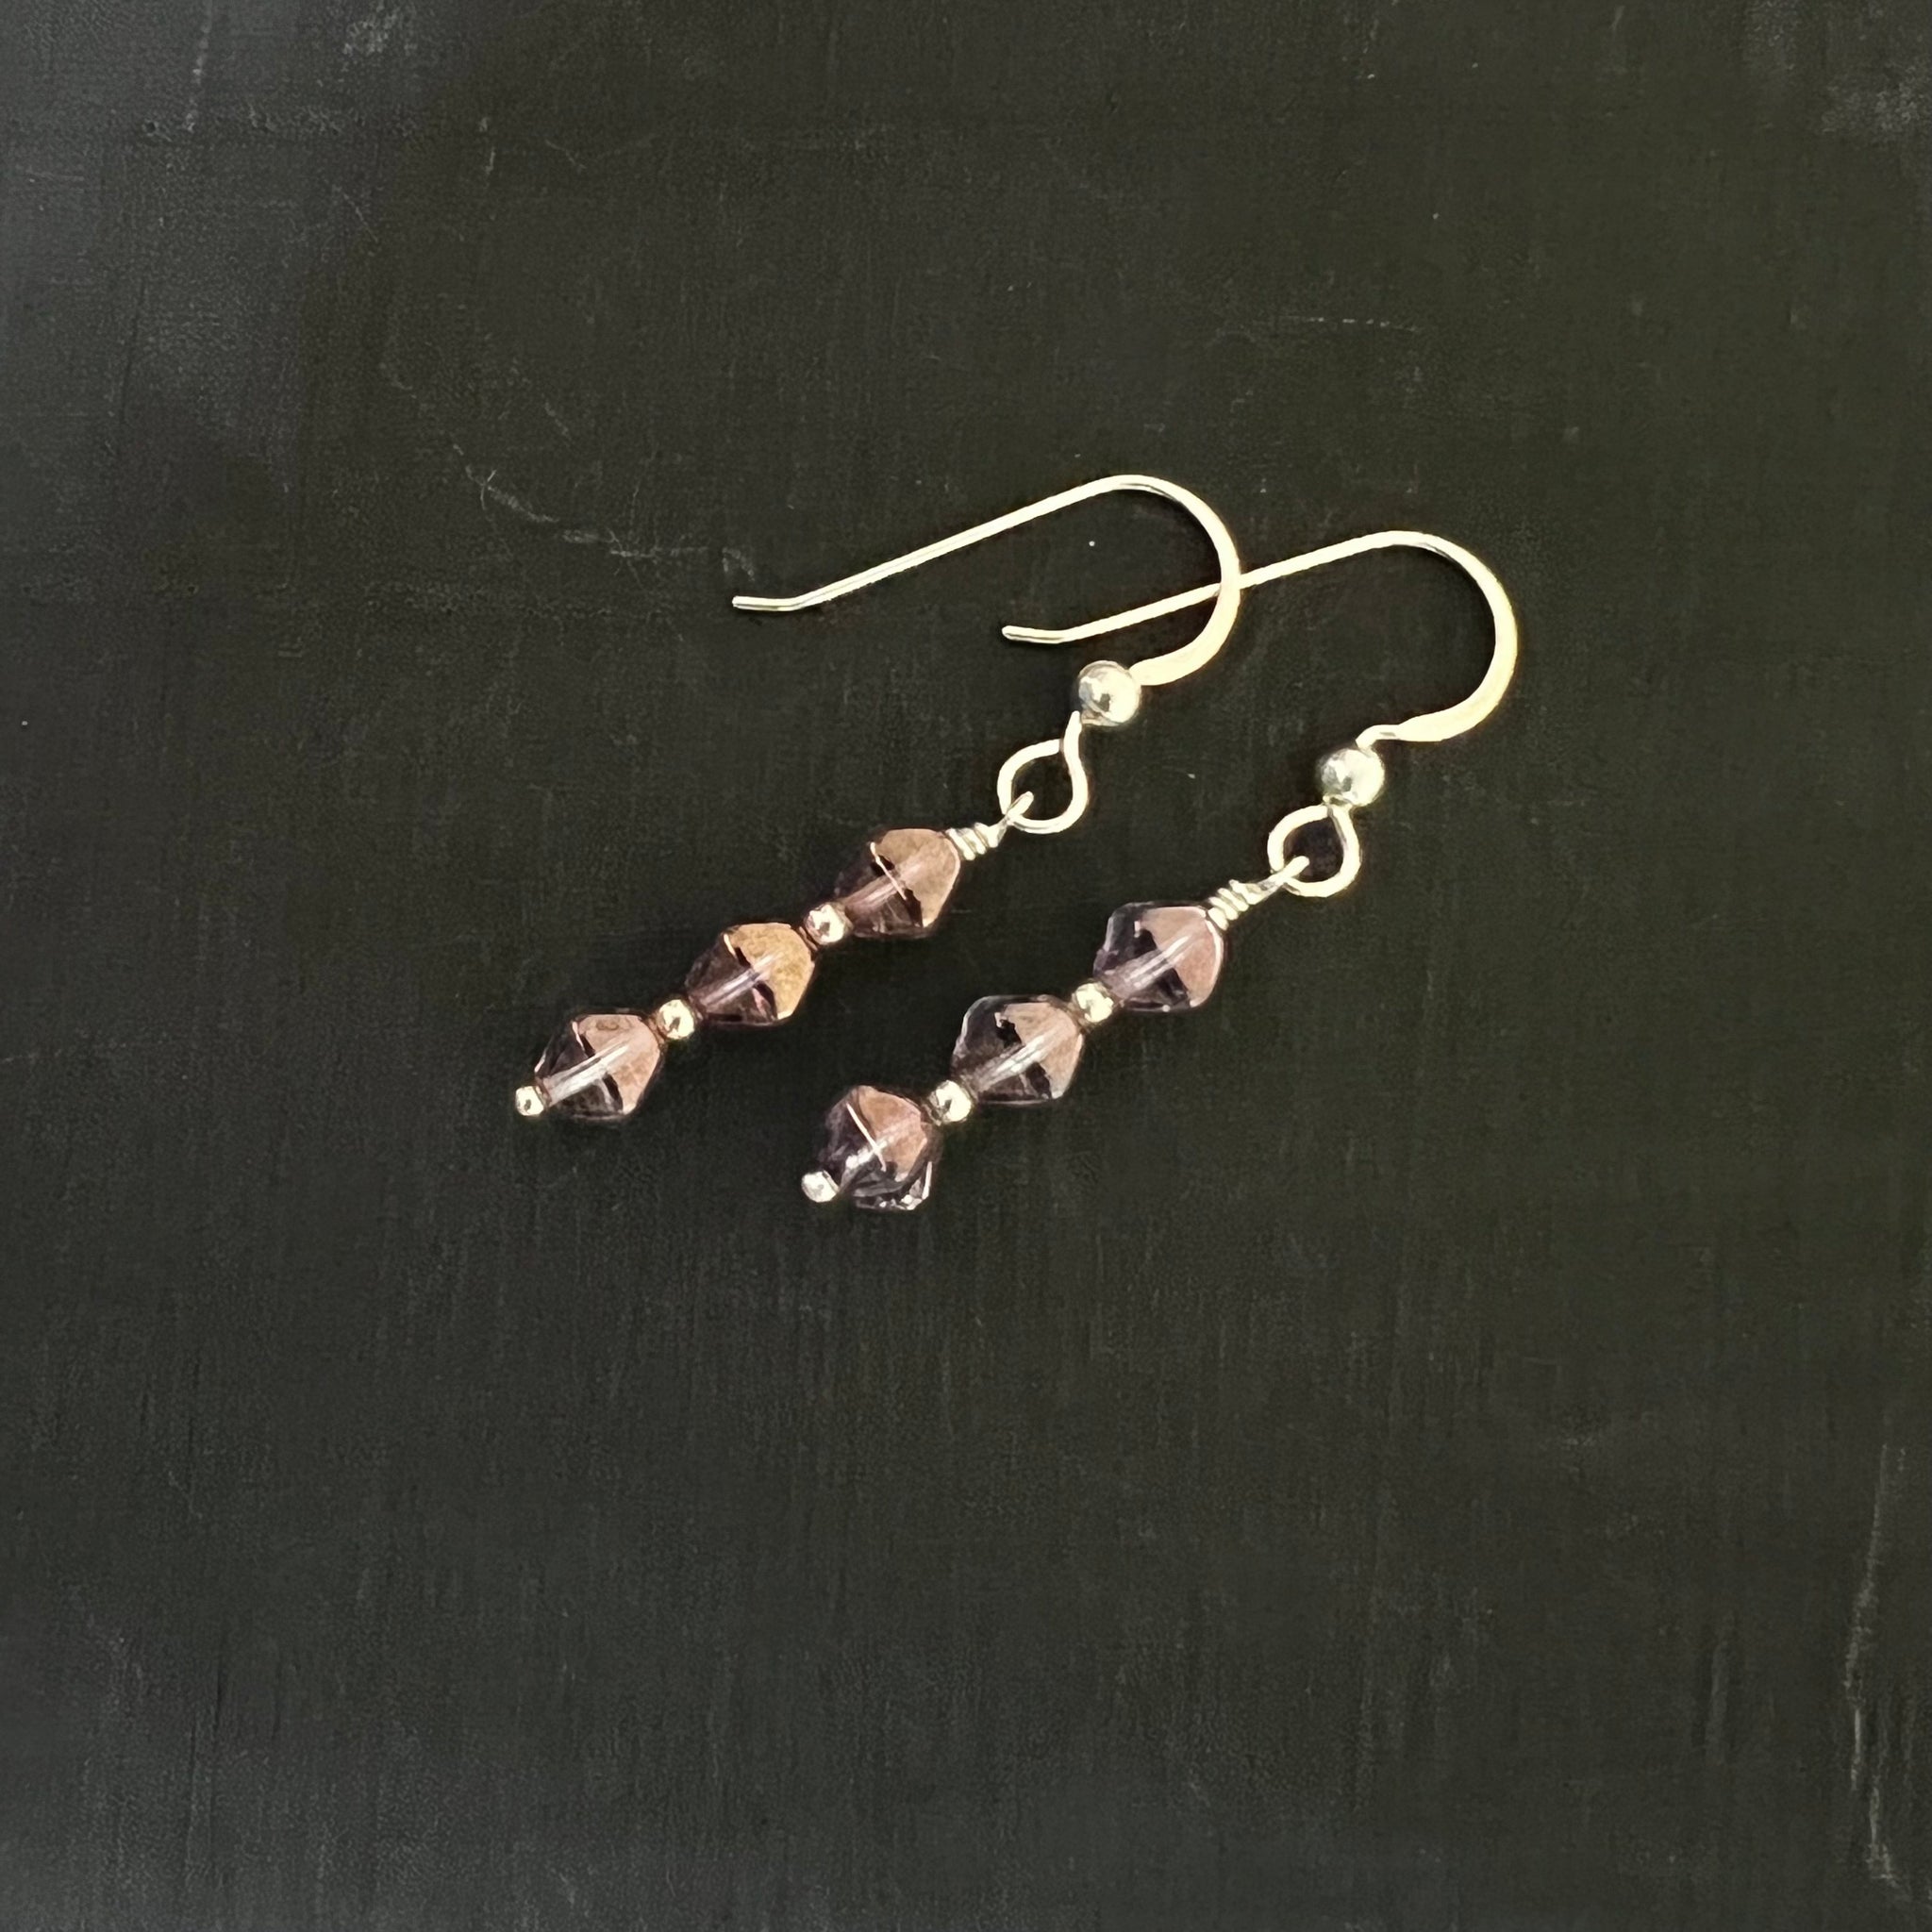 Purple glass bicone earrings